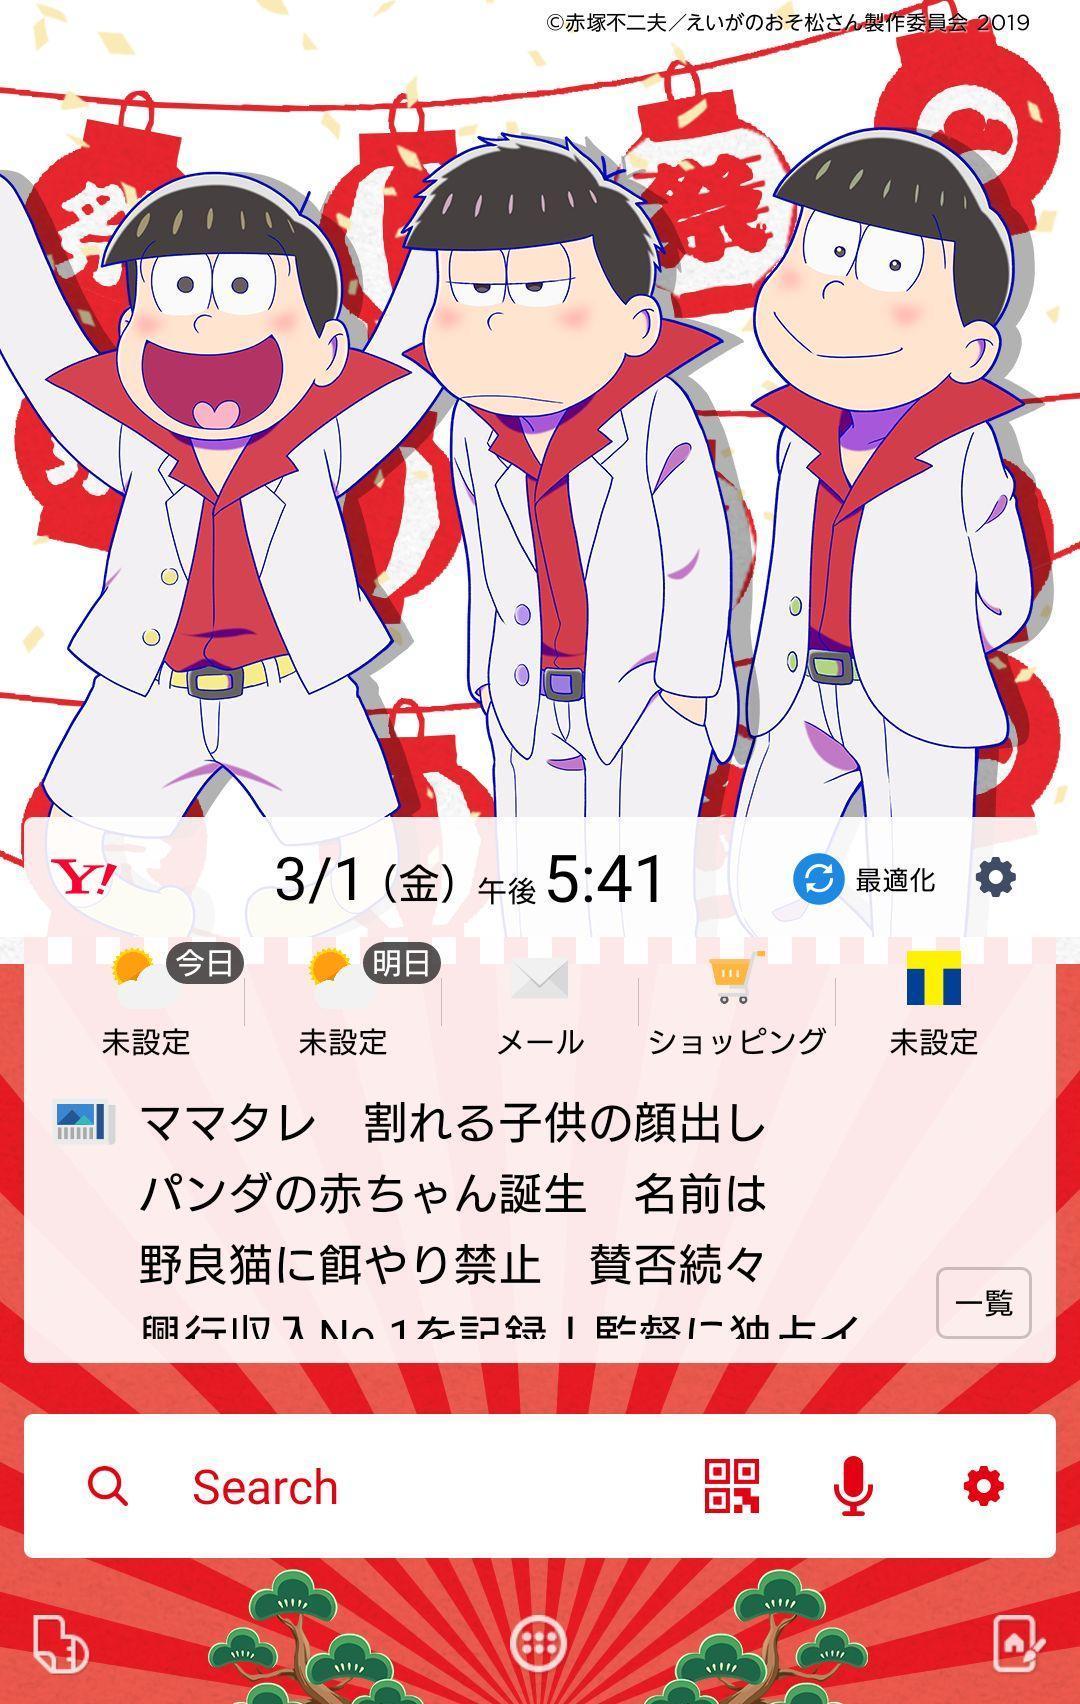 ヤフー春のおそ松さん祭り 壁紙きせかえ For Android Apk Download